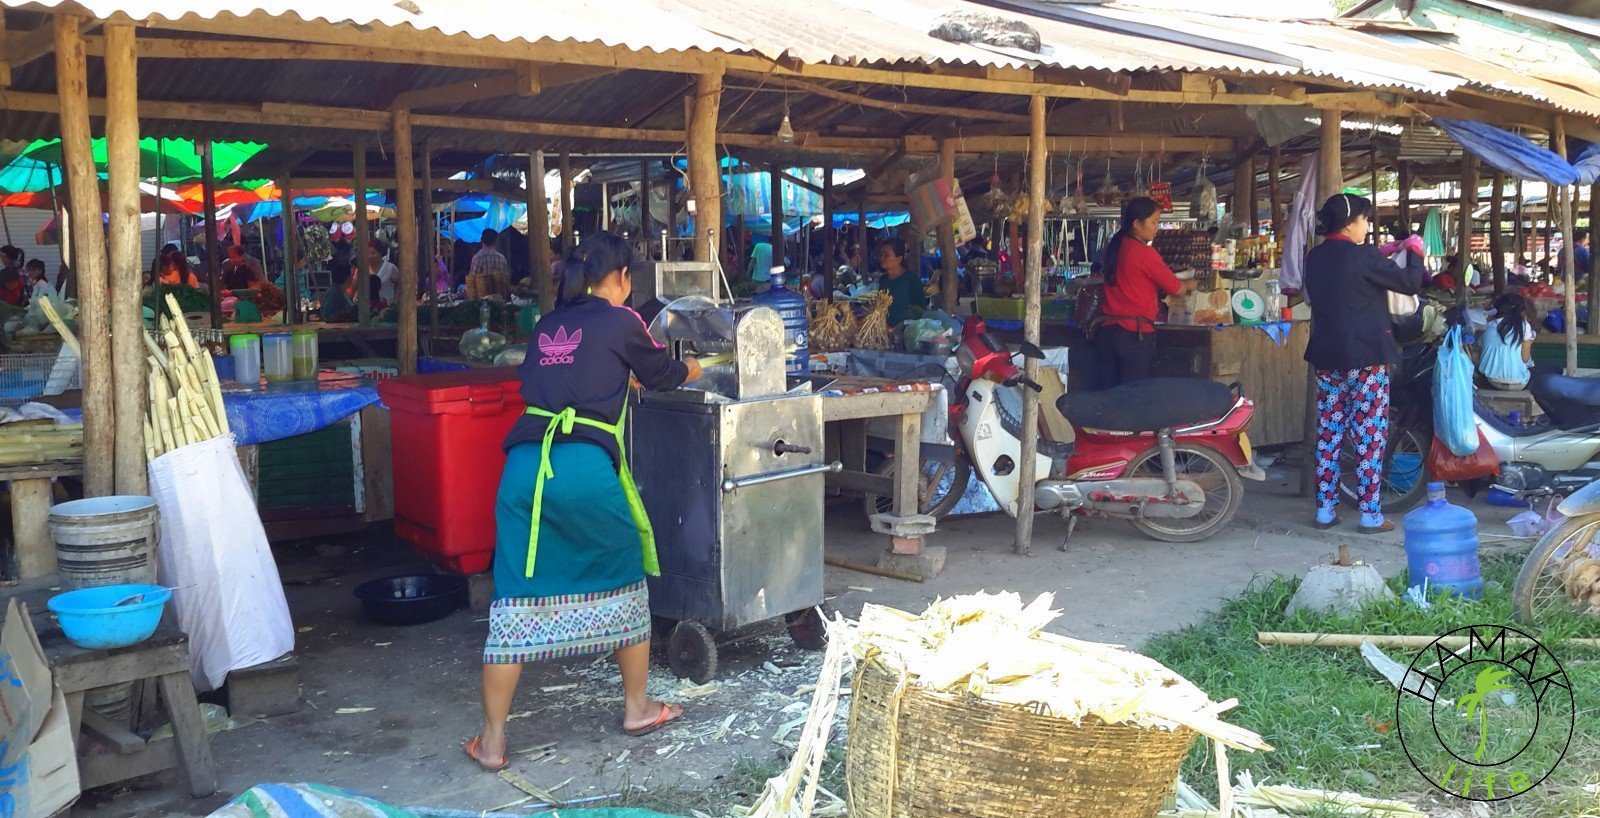 Produkcja soku z trzciny cukrowej w Laosie na targu w okolicach Vang Vieng.